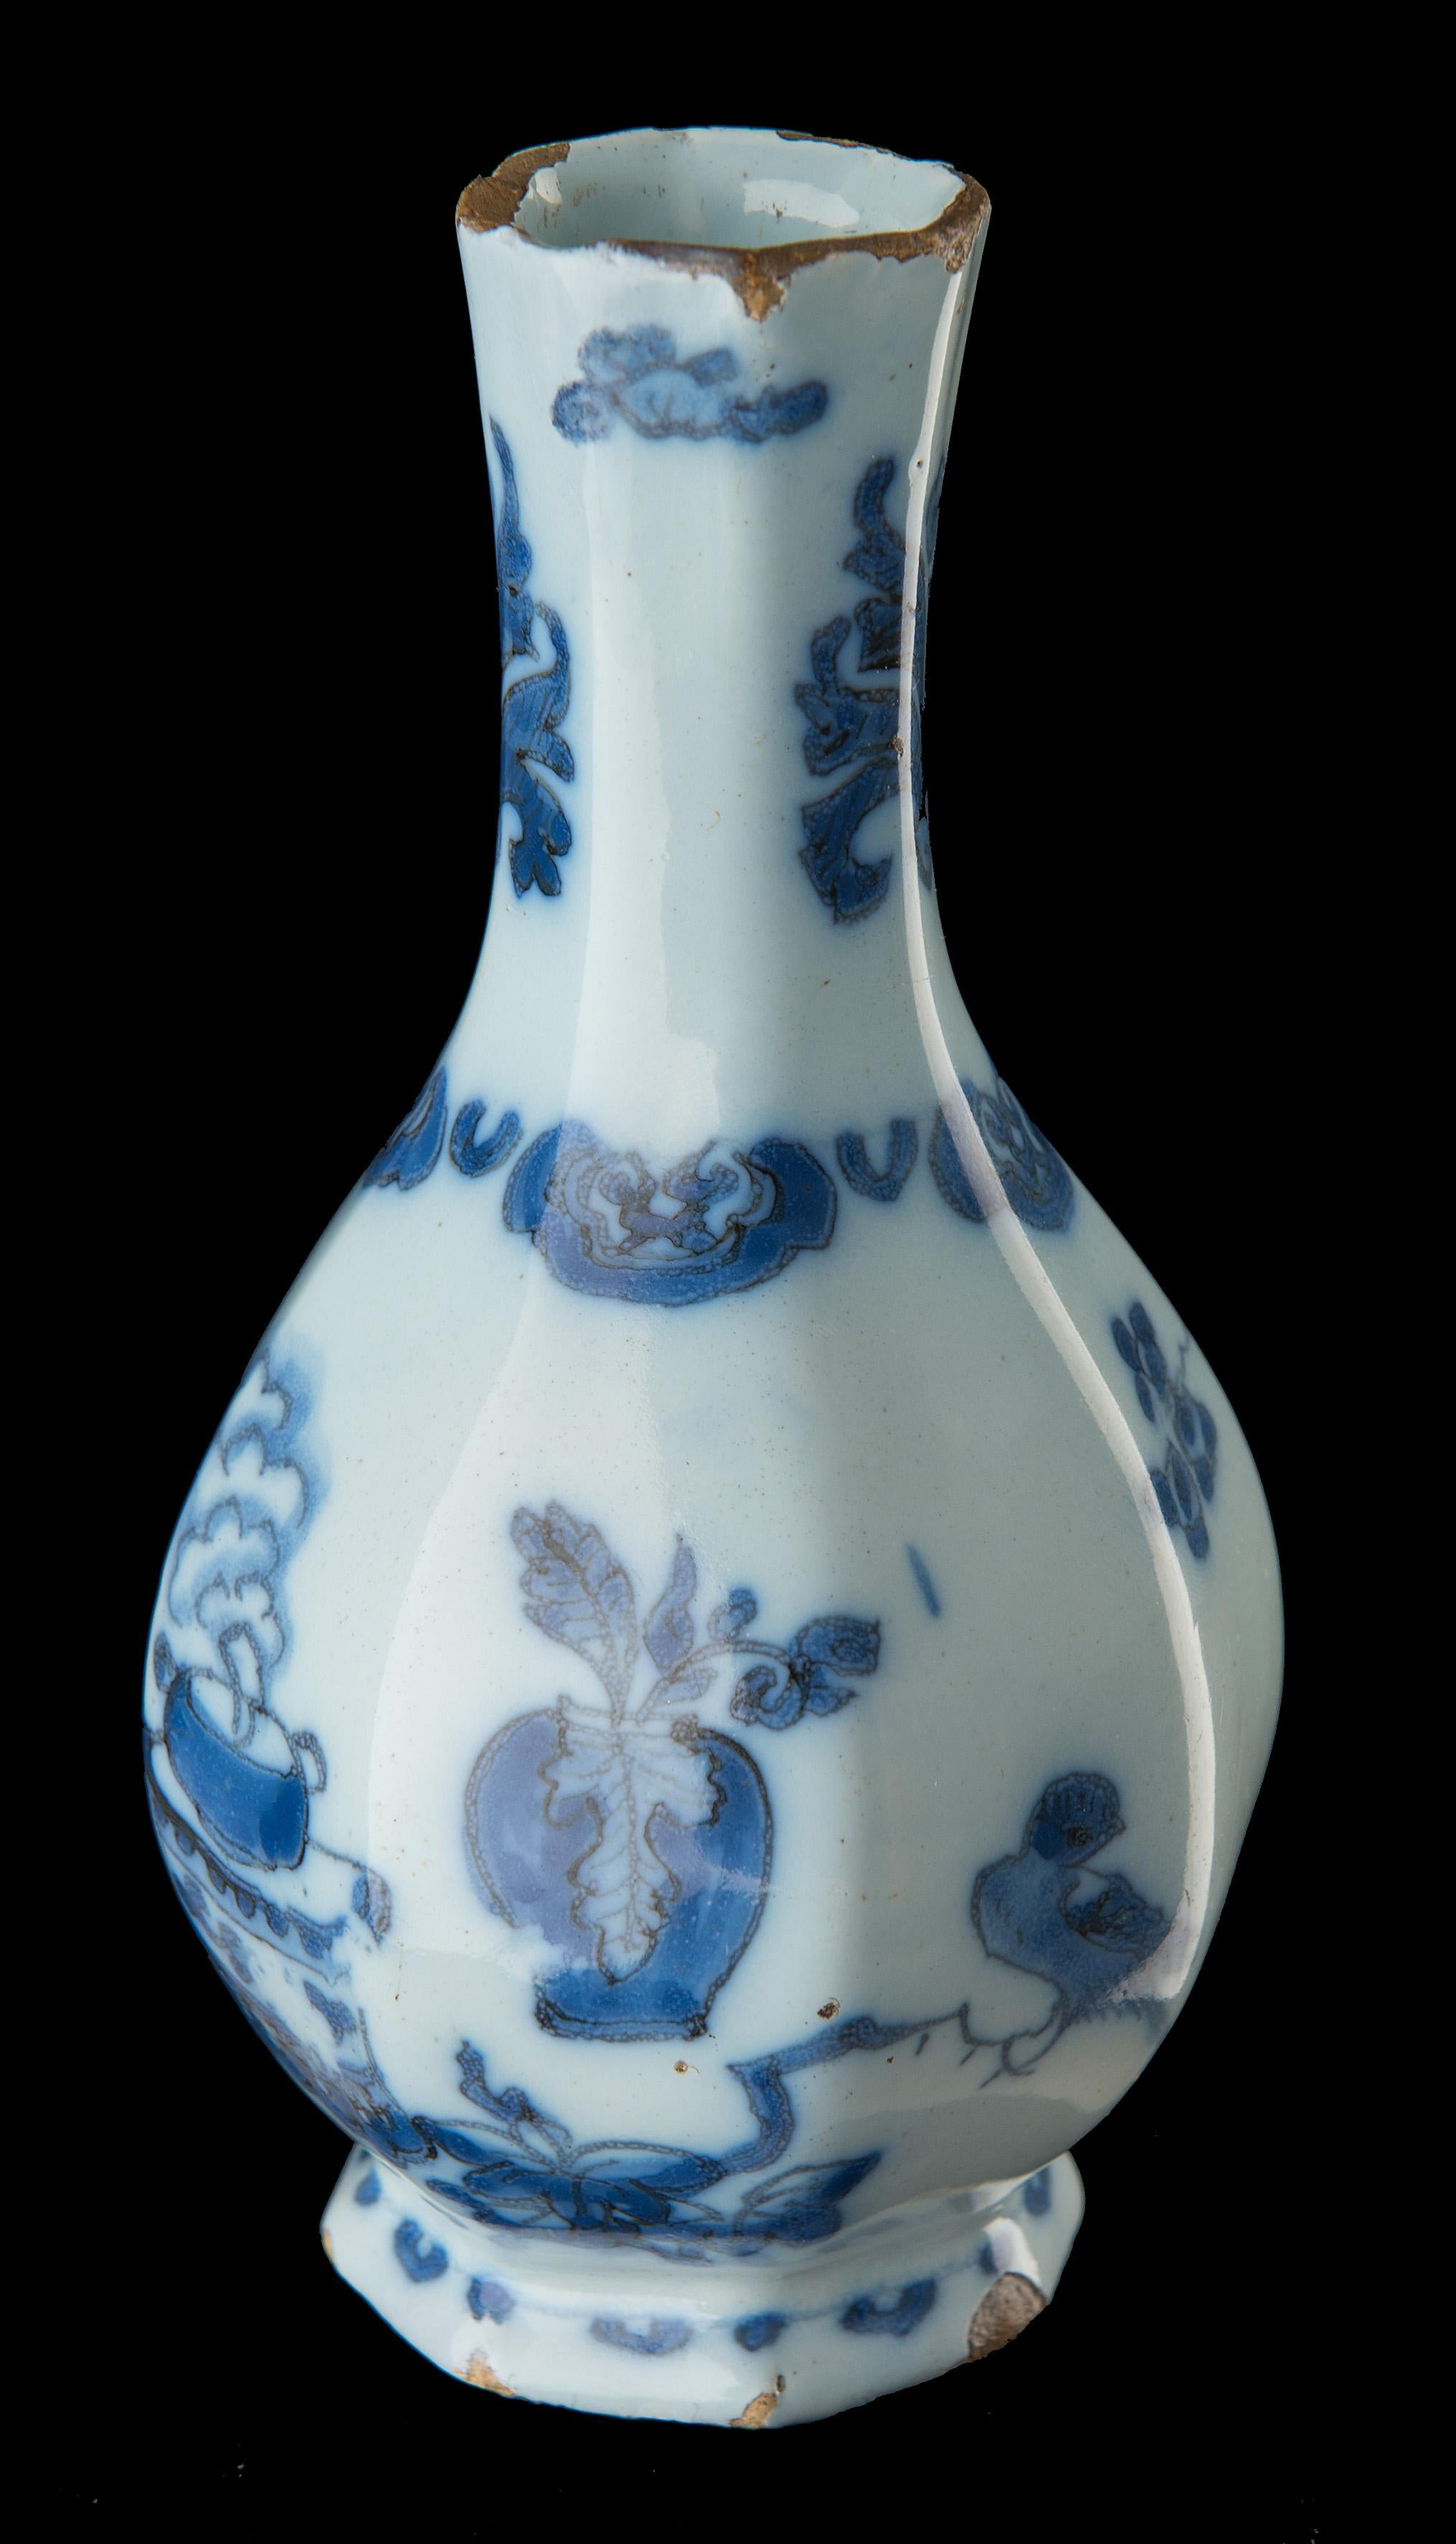 Blaue und weiße Chinoiserie-Flaschenvase. Delft, um 1685. 
Die Töpferei Metal Pot. Zeichen: LC und 4, Periode von Lambertus Cleffius (1679-1691)

Die Flaschenvase hat einen achteckigen Körper mit ausgestelltem Hals und steht auf einem taillierten